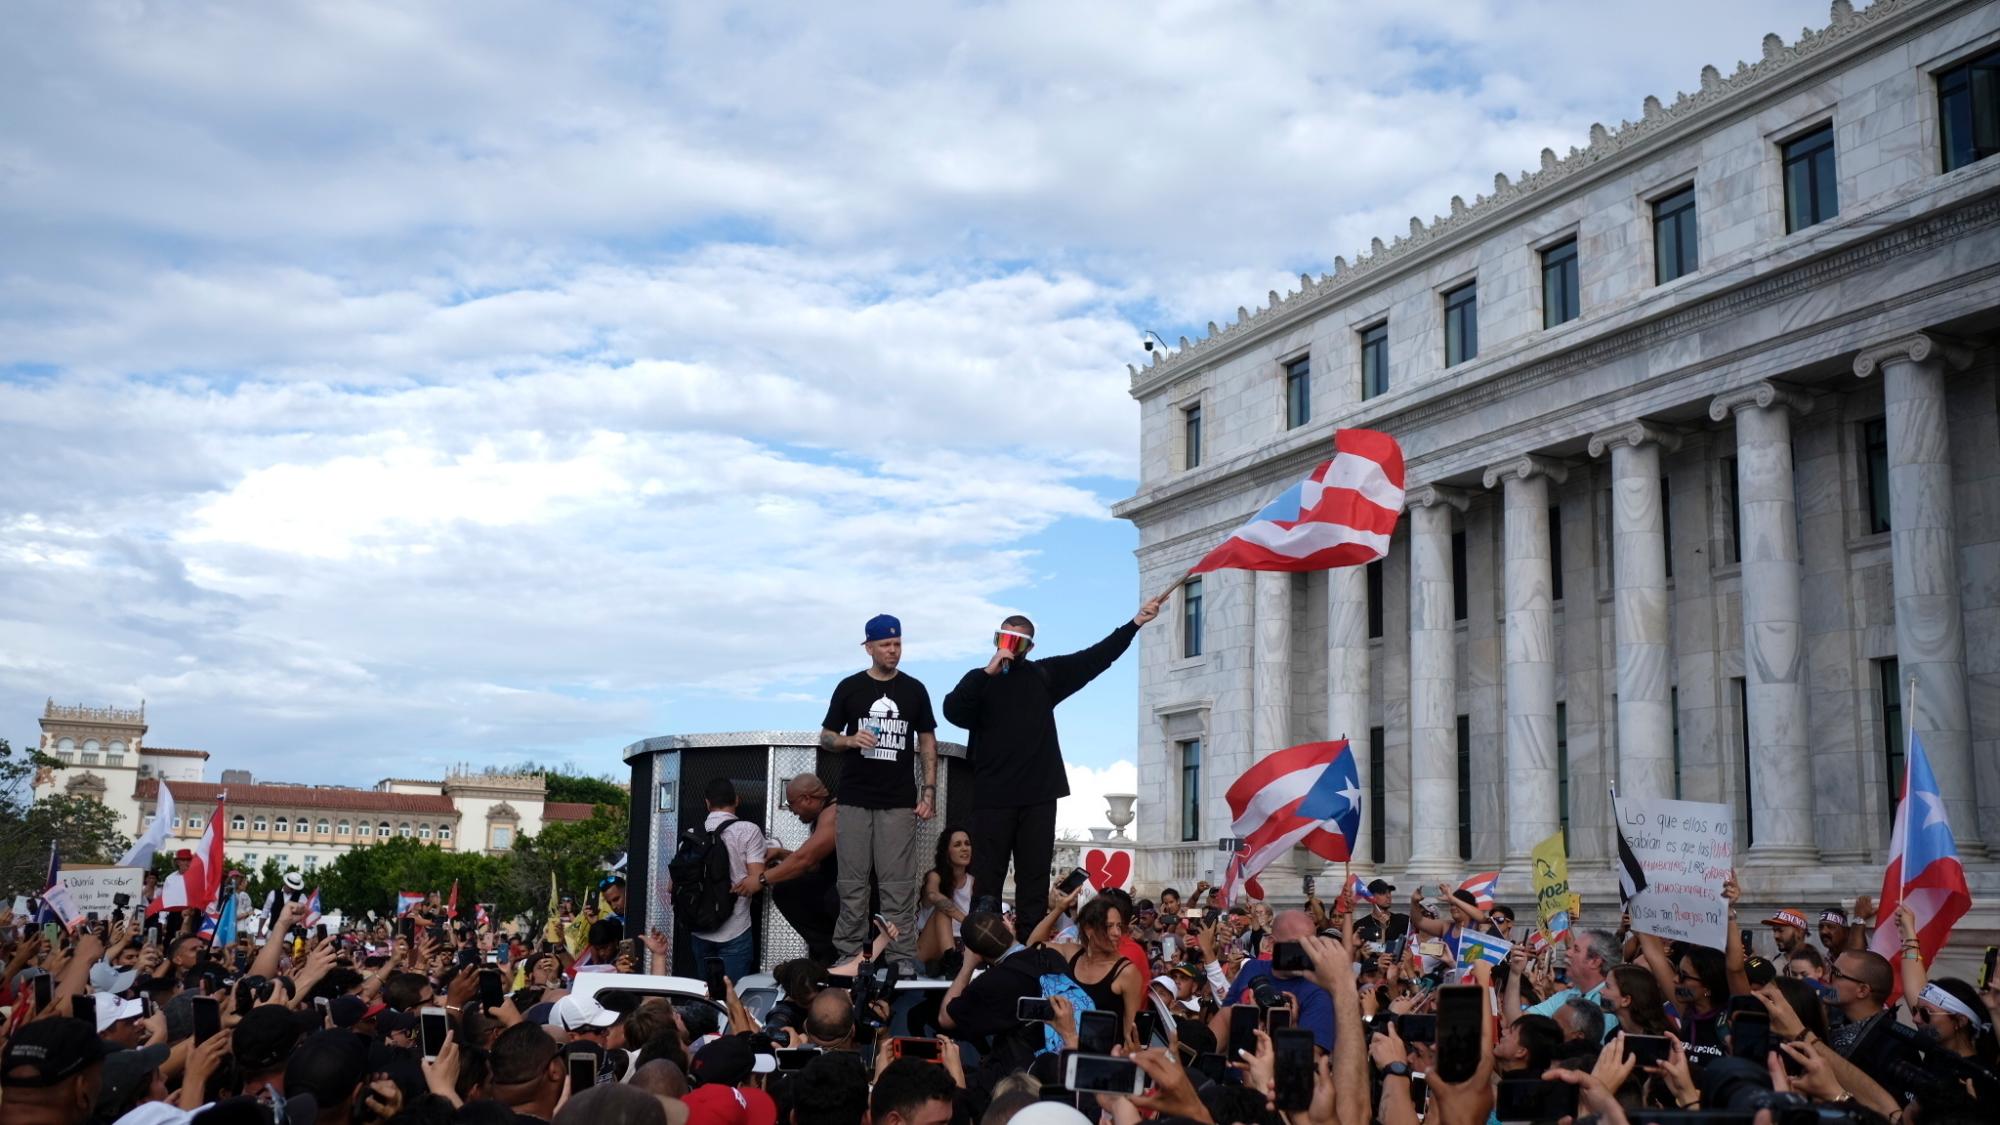 Los artistas puertorriqueños René Pérez “Residente” y Benito Antonio Martinez Ocasio “Bad Bunny” avivan a una multitud frente al capitolio puertorriqueño previo a una manifestación contra el gobernador Ricardo Rosselló, en San Juan, Puerto Rico, el miércoles 17 de julio de 2019. 